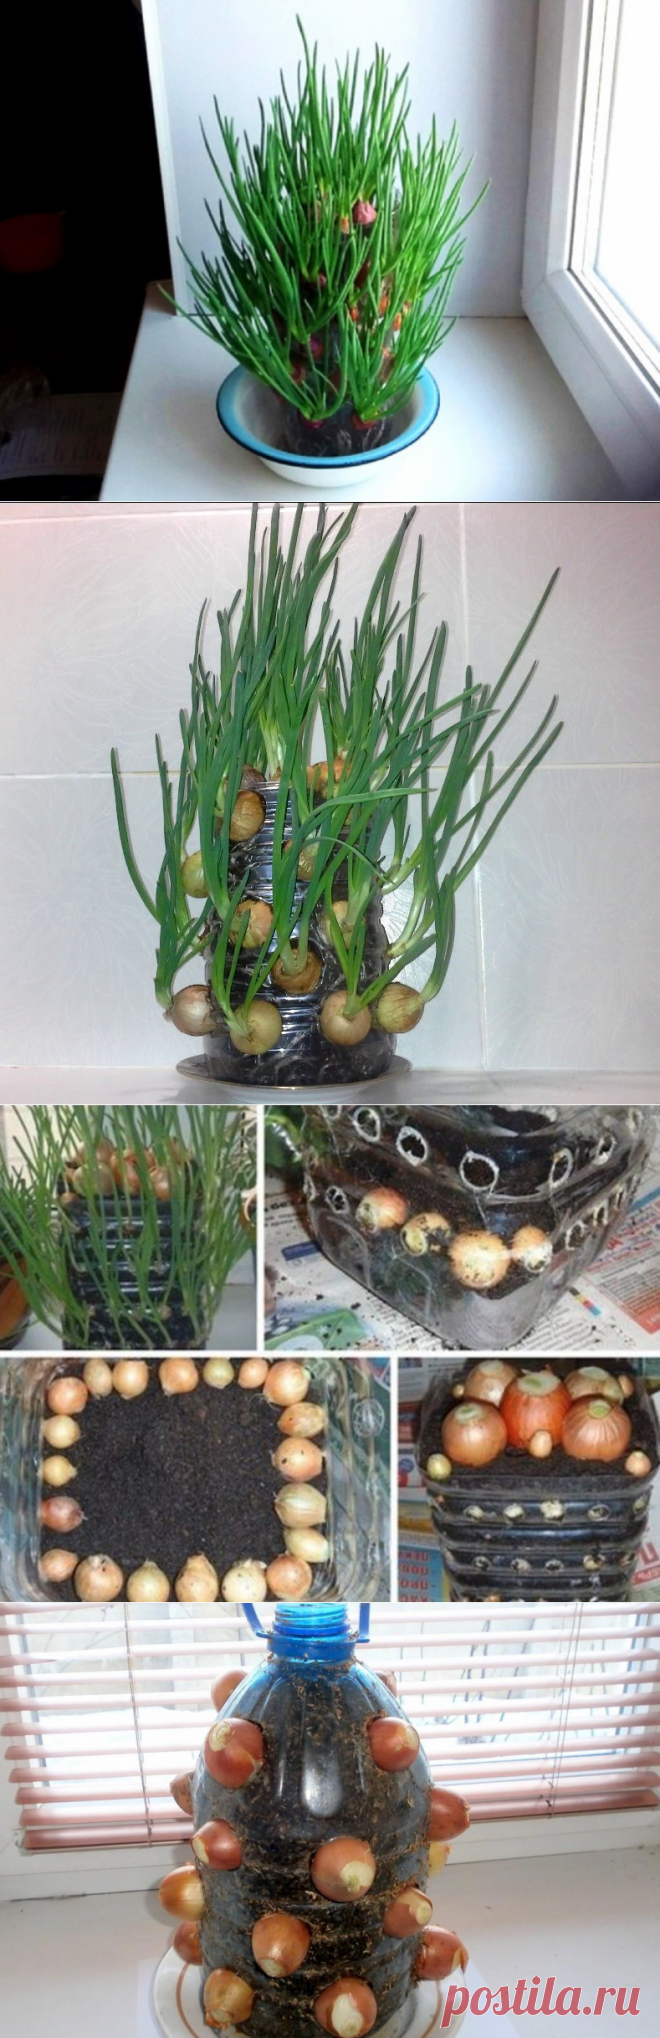 Как вырастить зеленый лук на подоконнике в пластиковой бутылке | Растения для сада, огорода